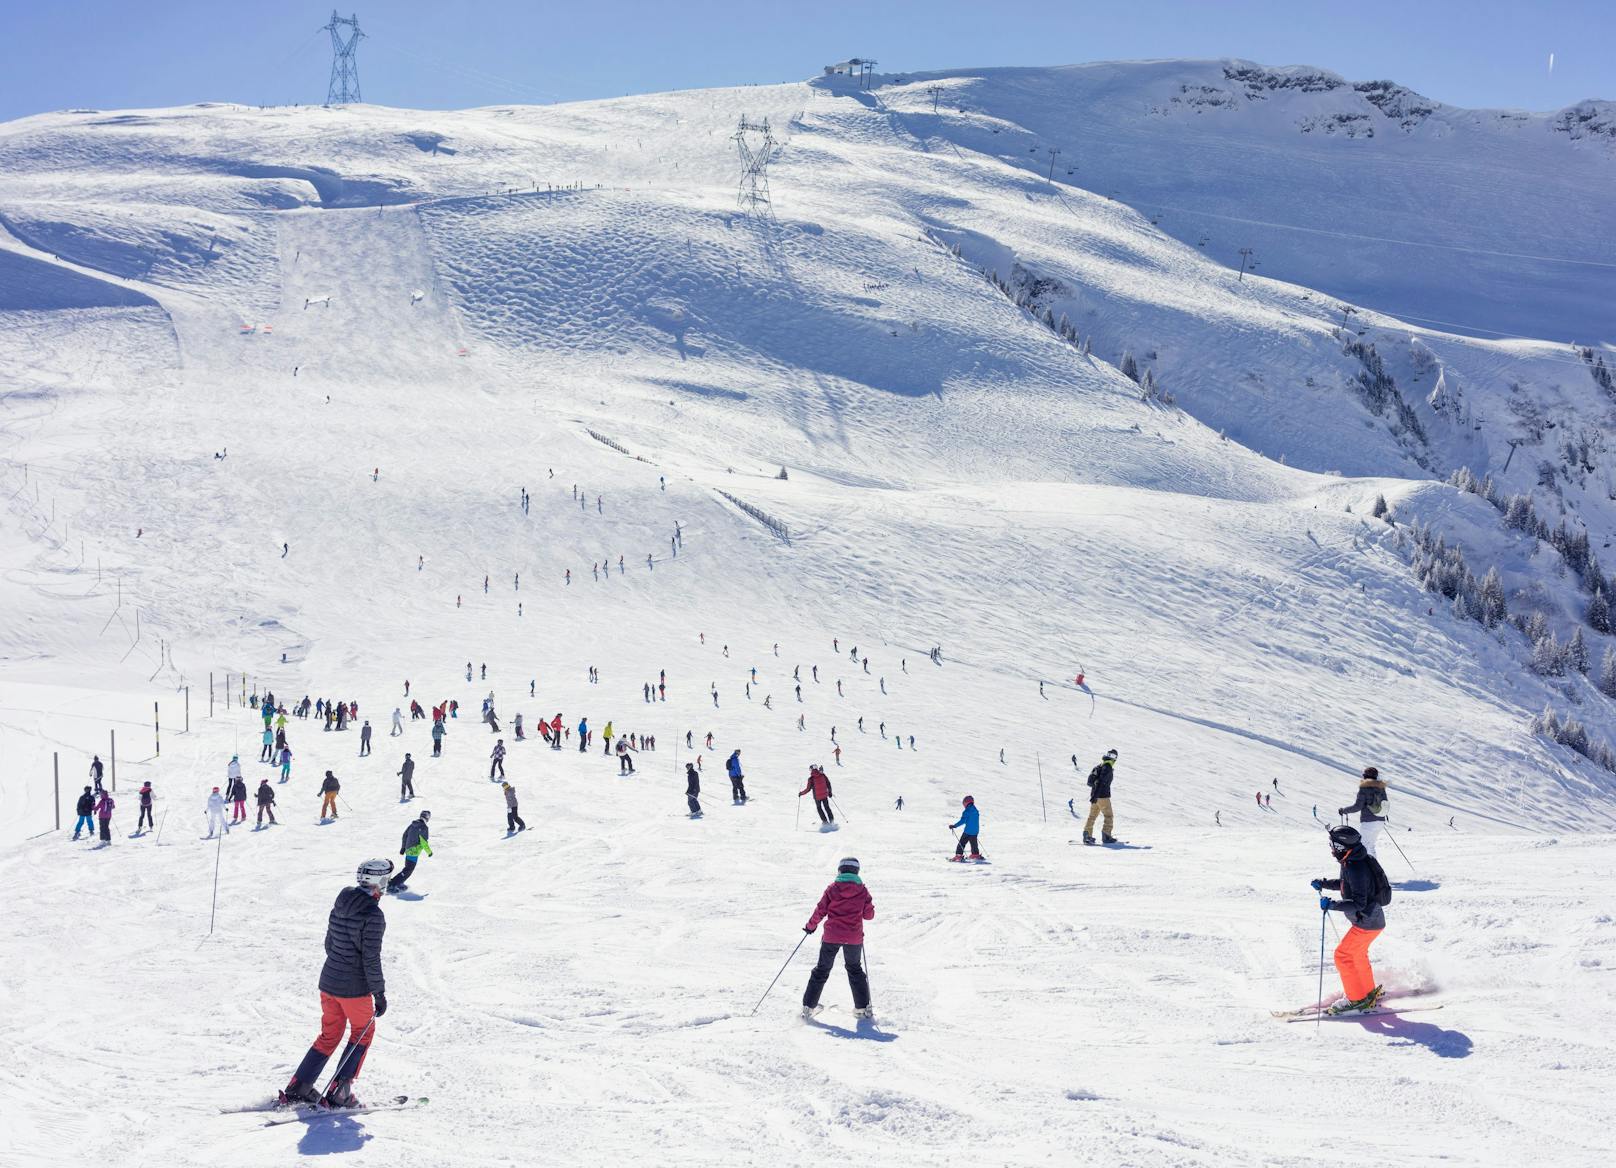 Das tödliche Unglück ereignete sich im Skigebiet von Flaine in den französischen Alpen. 